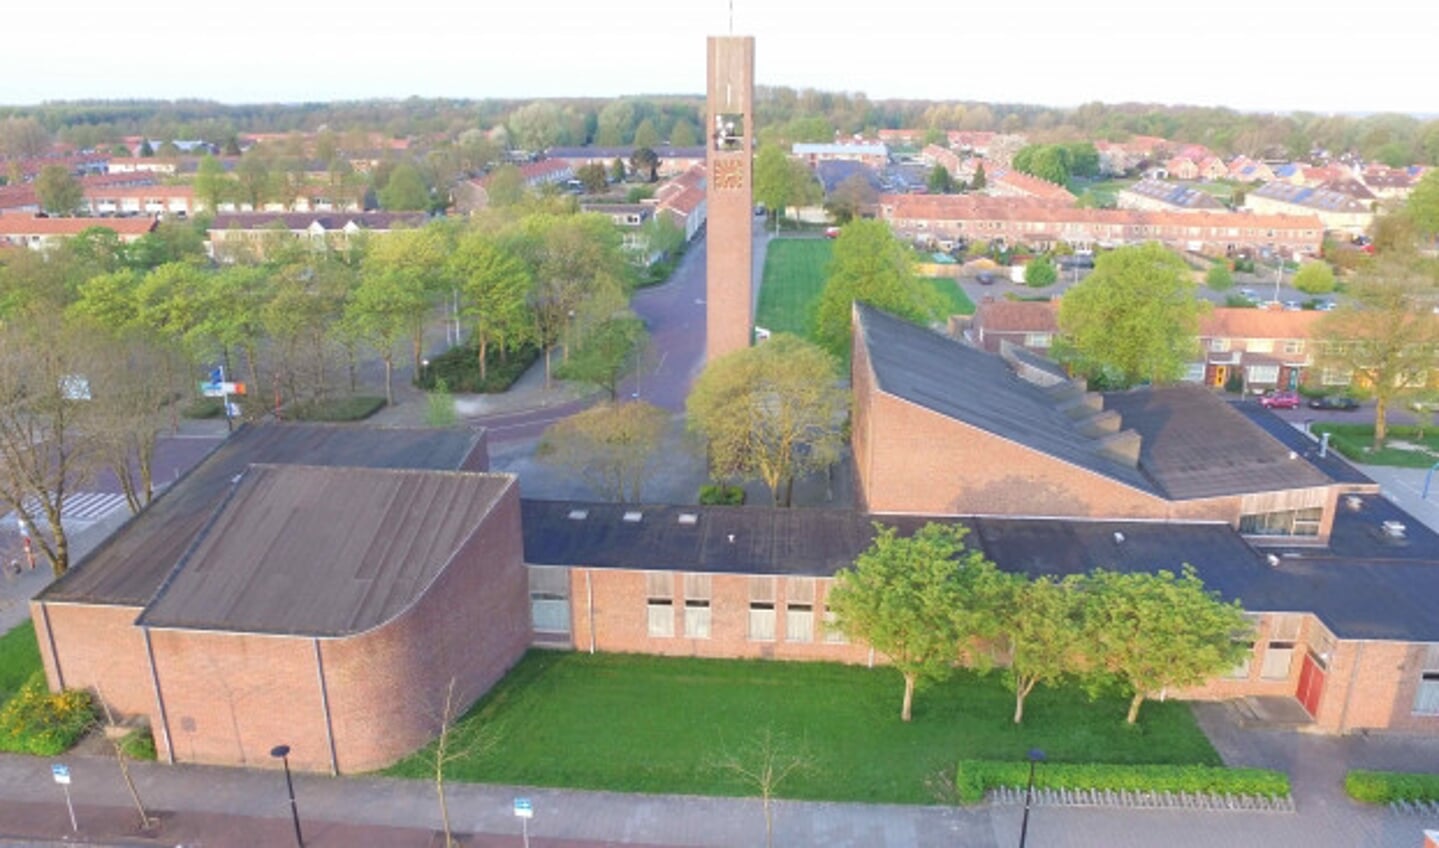  Het huidige kerkcentrum De Voorhof.